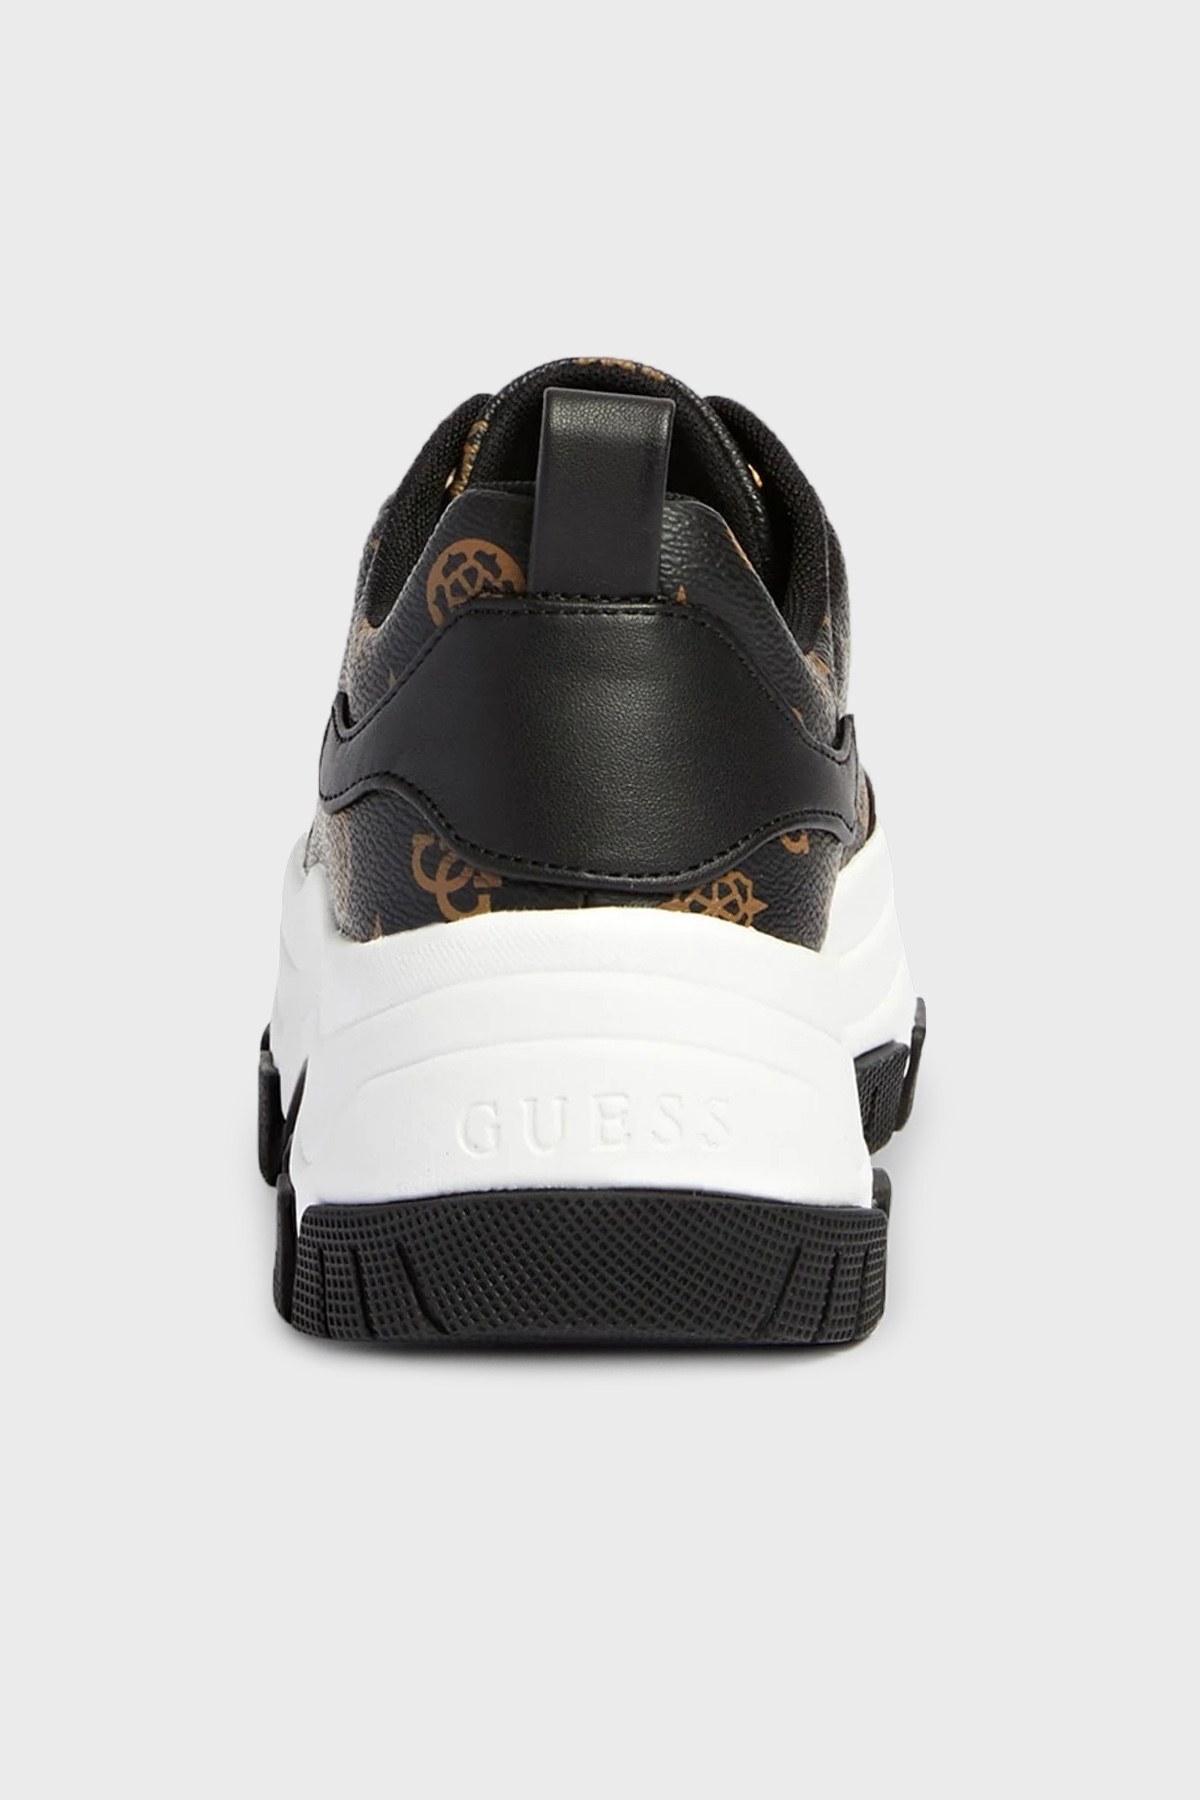 Guess Logolu Kalın Tabanlı Sneaker Bayan Ayakkabı FL7BIRFAL12 BRBLK SİYAH-KOYU KAHVE